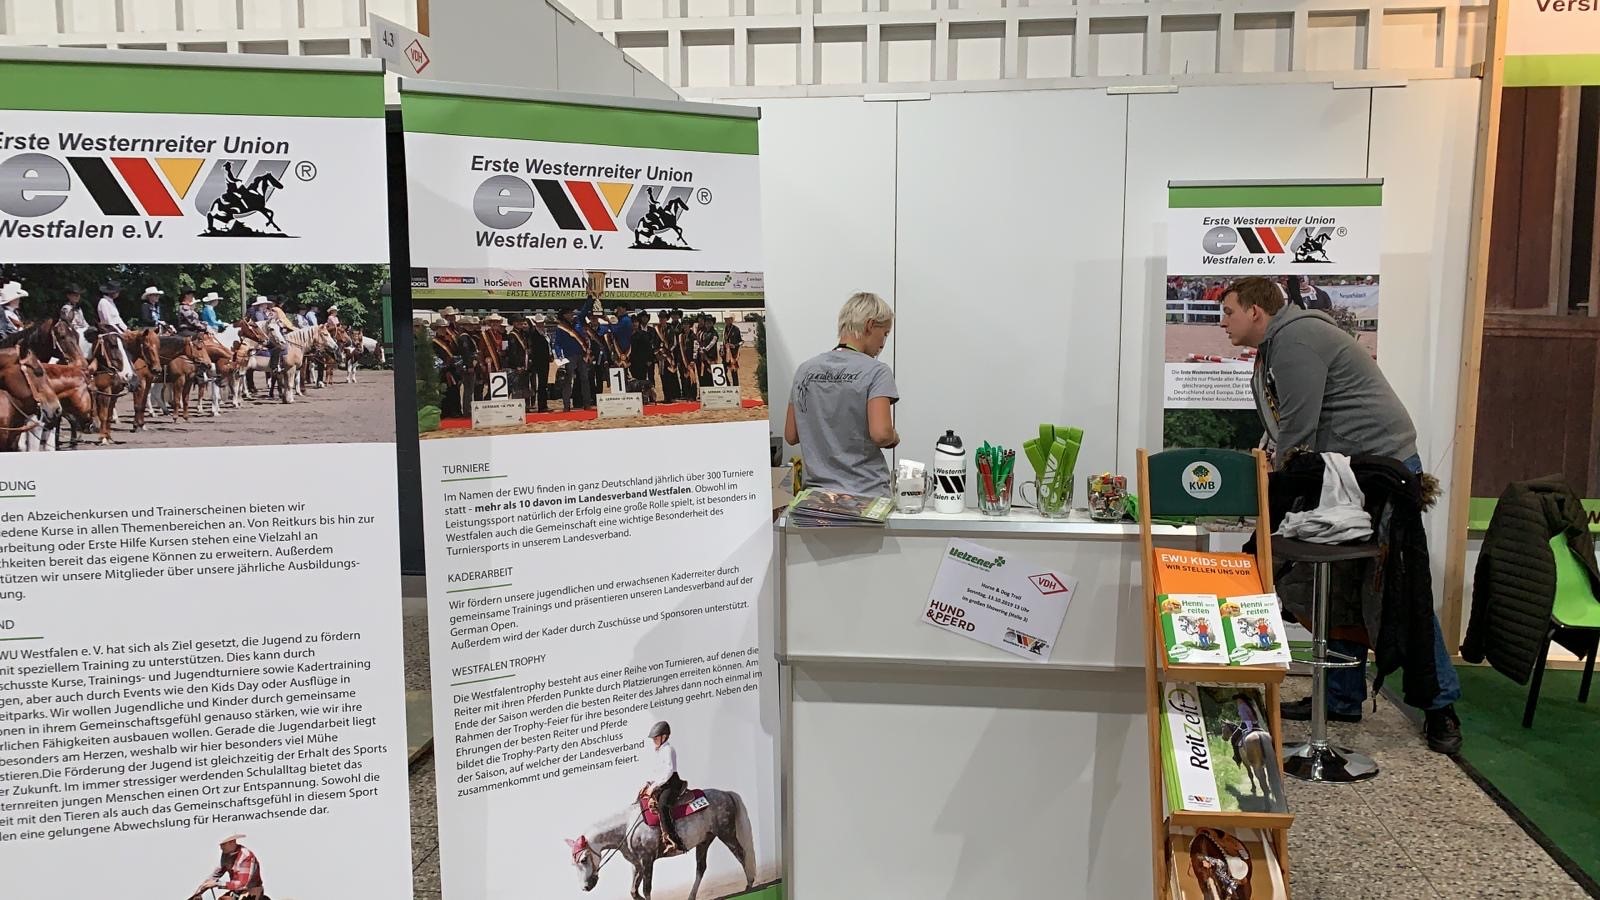 Hund & Pferd 2019 – Wir erwarten Euch mit neuem Messe Stand | EWU Westfalen e.V.